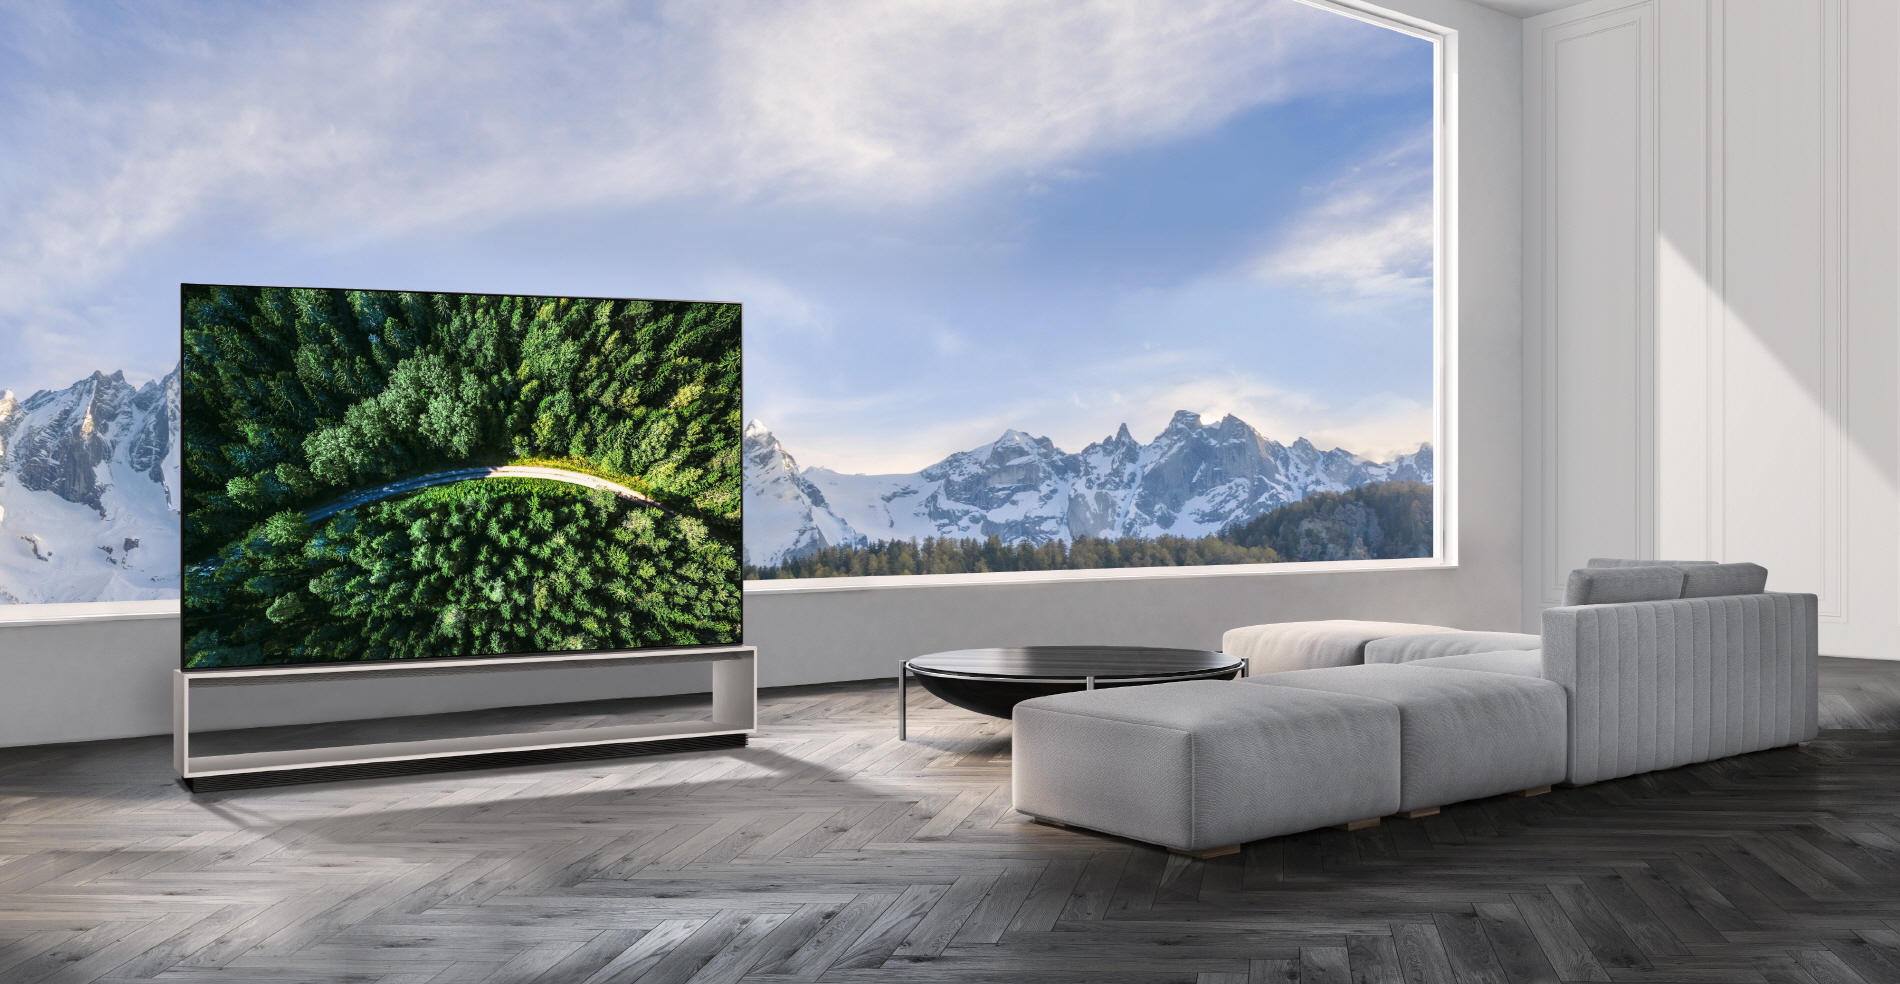 LG presenta sus televisores  OLED y Nanocell con tecnología 8K